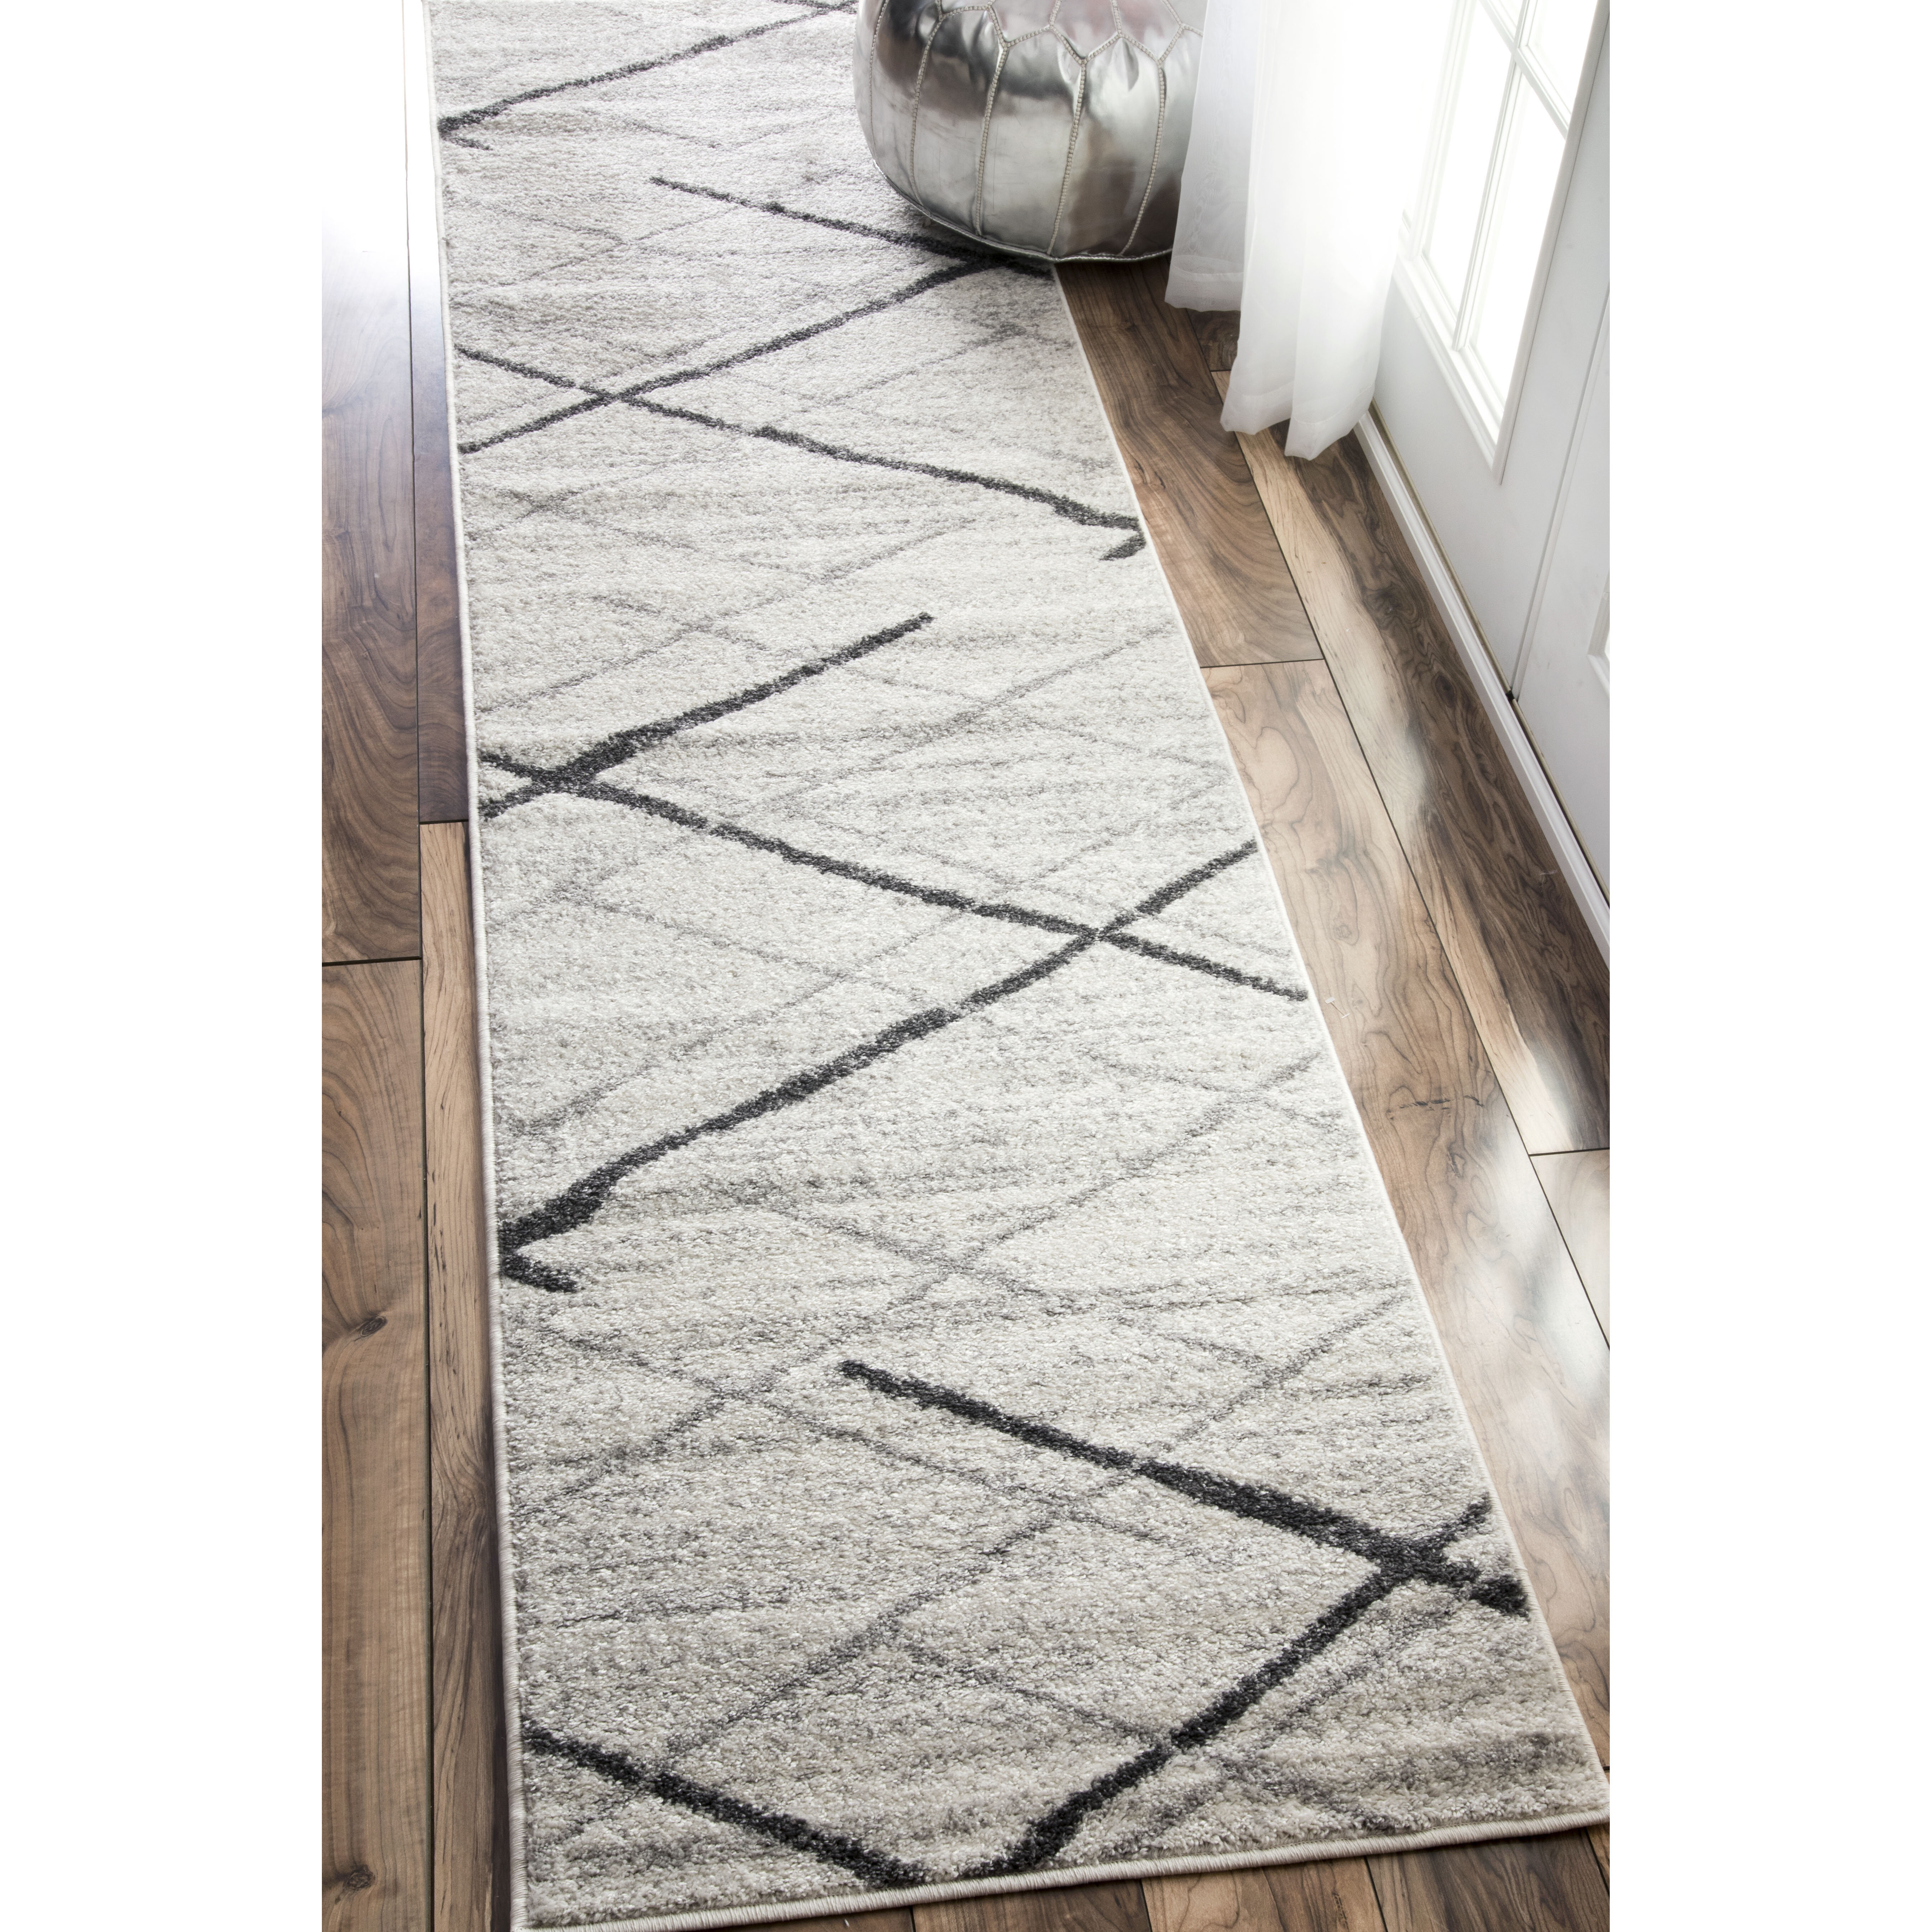 Bedroom Floor etc Torreta 80x100cm Non-Slip Multiple Lengths Line Pattern in Modern Style Ideal for Kitchen casa pura® Modern Carpet Rug Runner for Hallway 